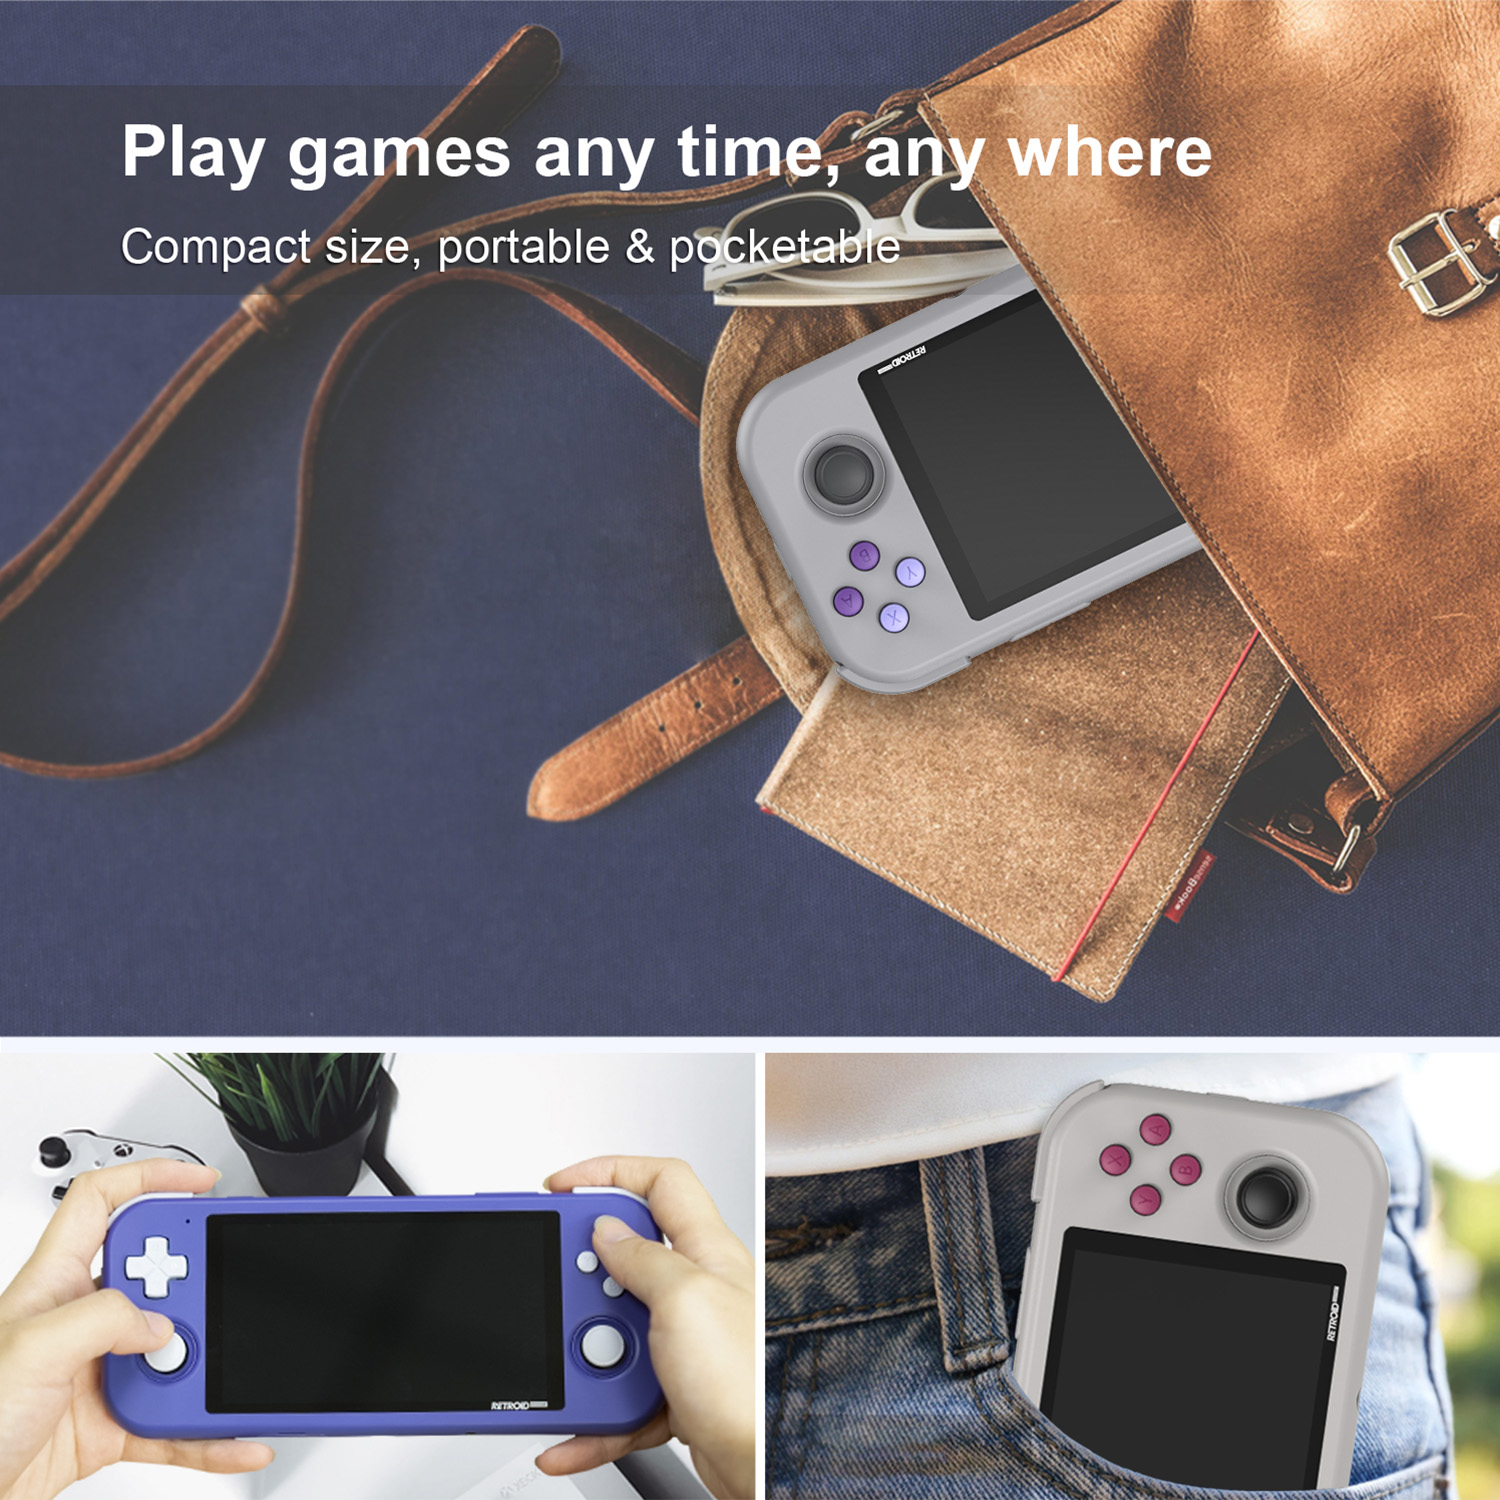 Retroid Pocket 3, portátil para juegos